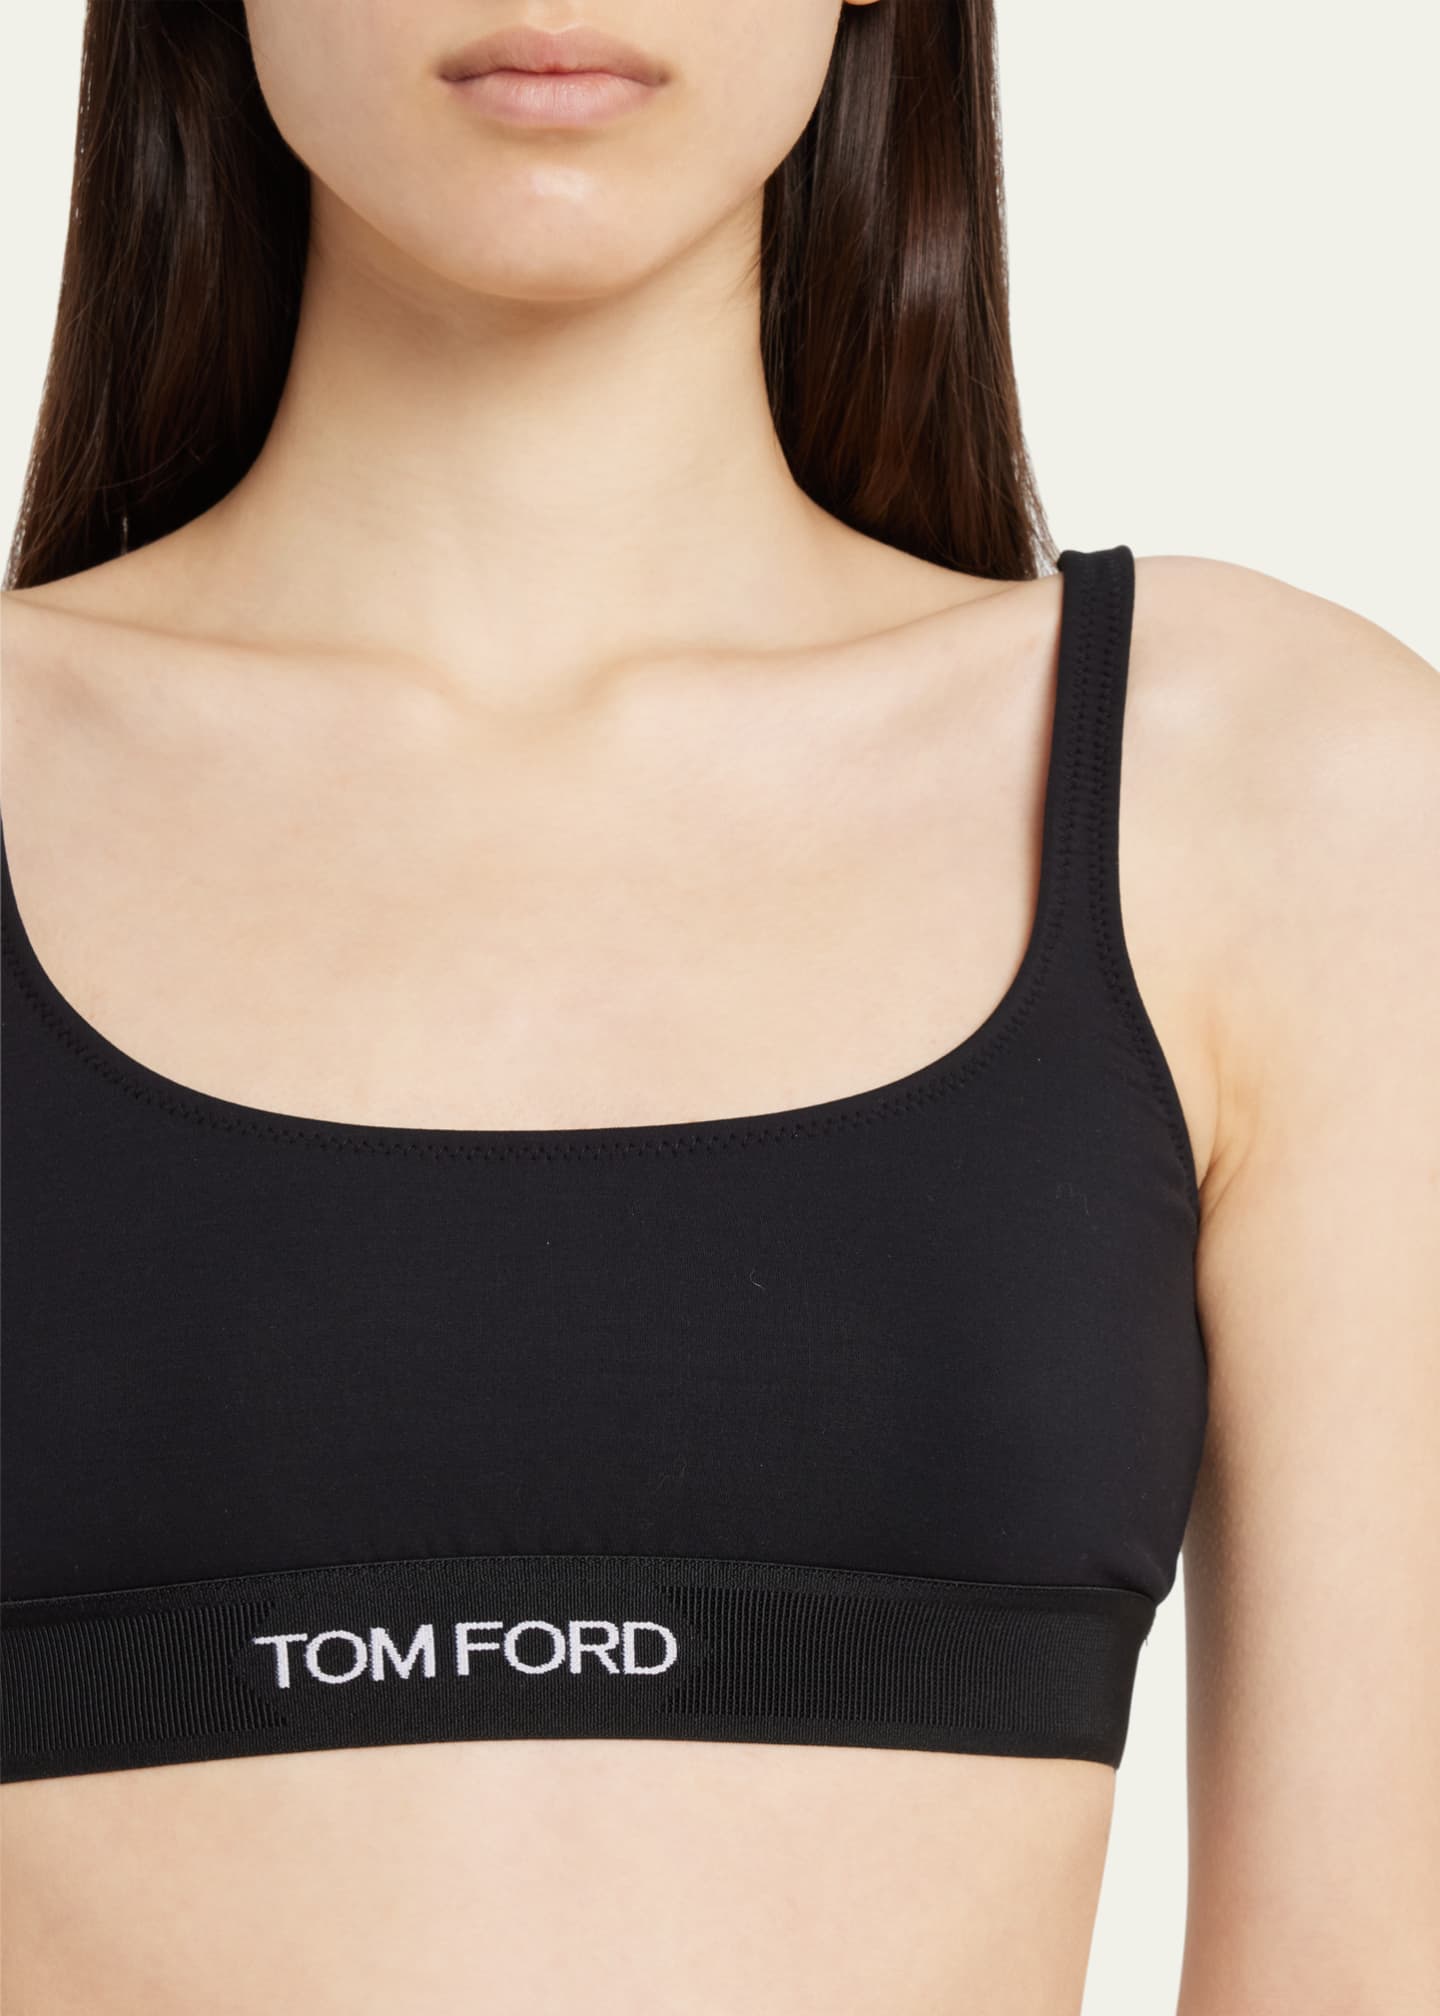 Printed logo bralette - Tom Ford - Women